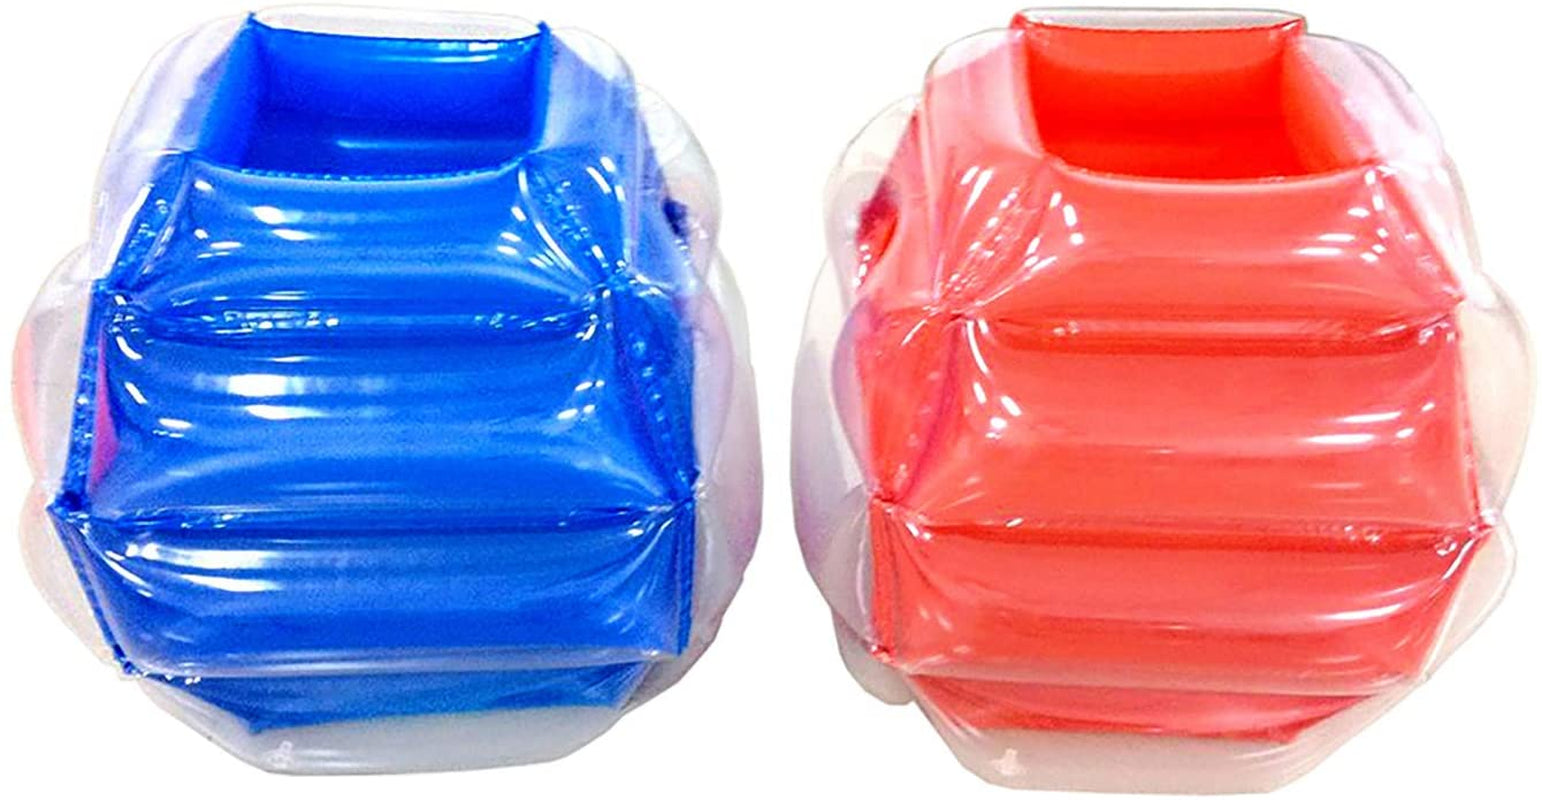 BANZAI Bump N' Bounce Body Bumpers - Red & Blue, 2 Pack